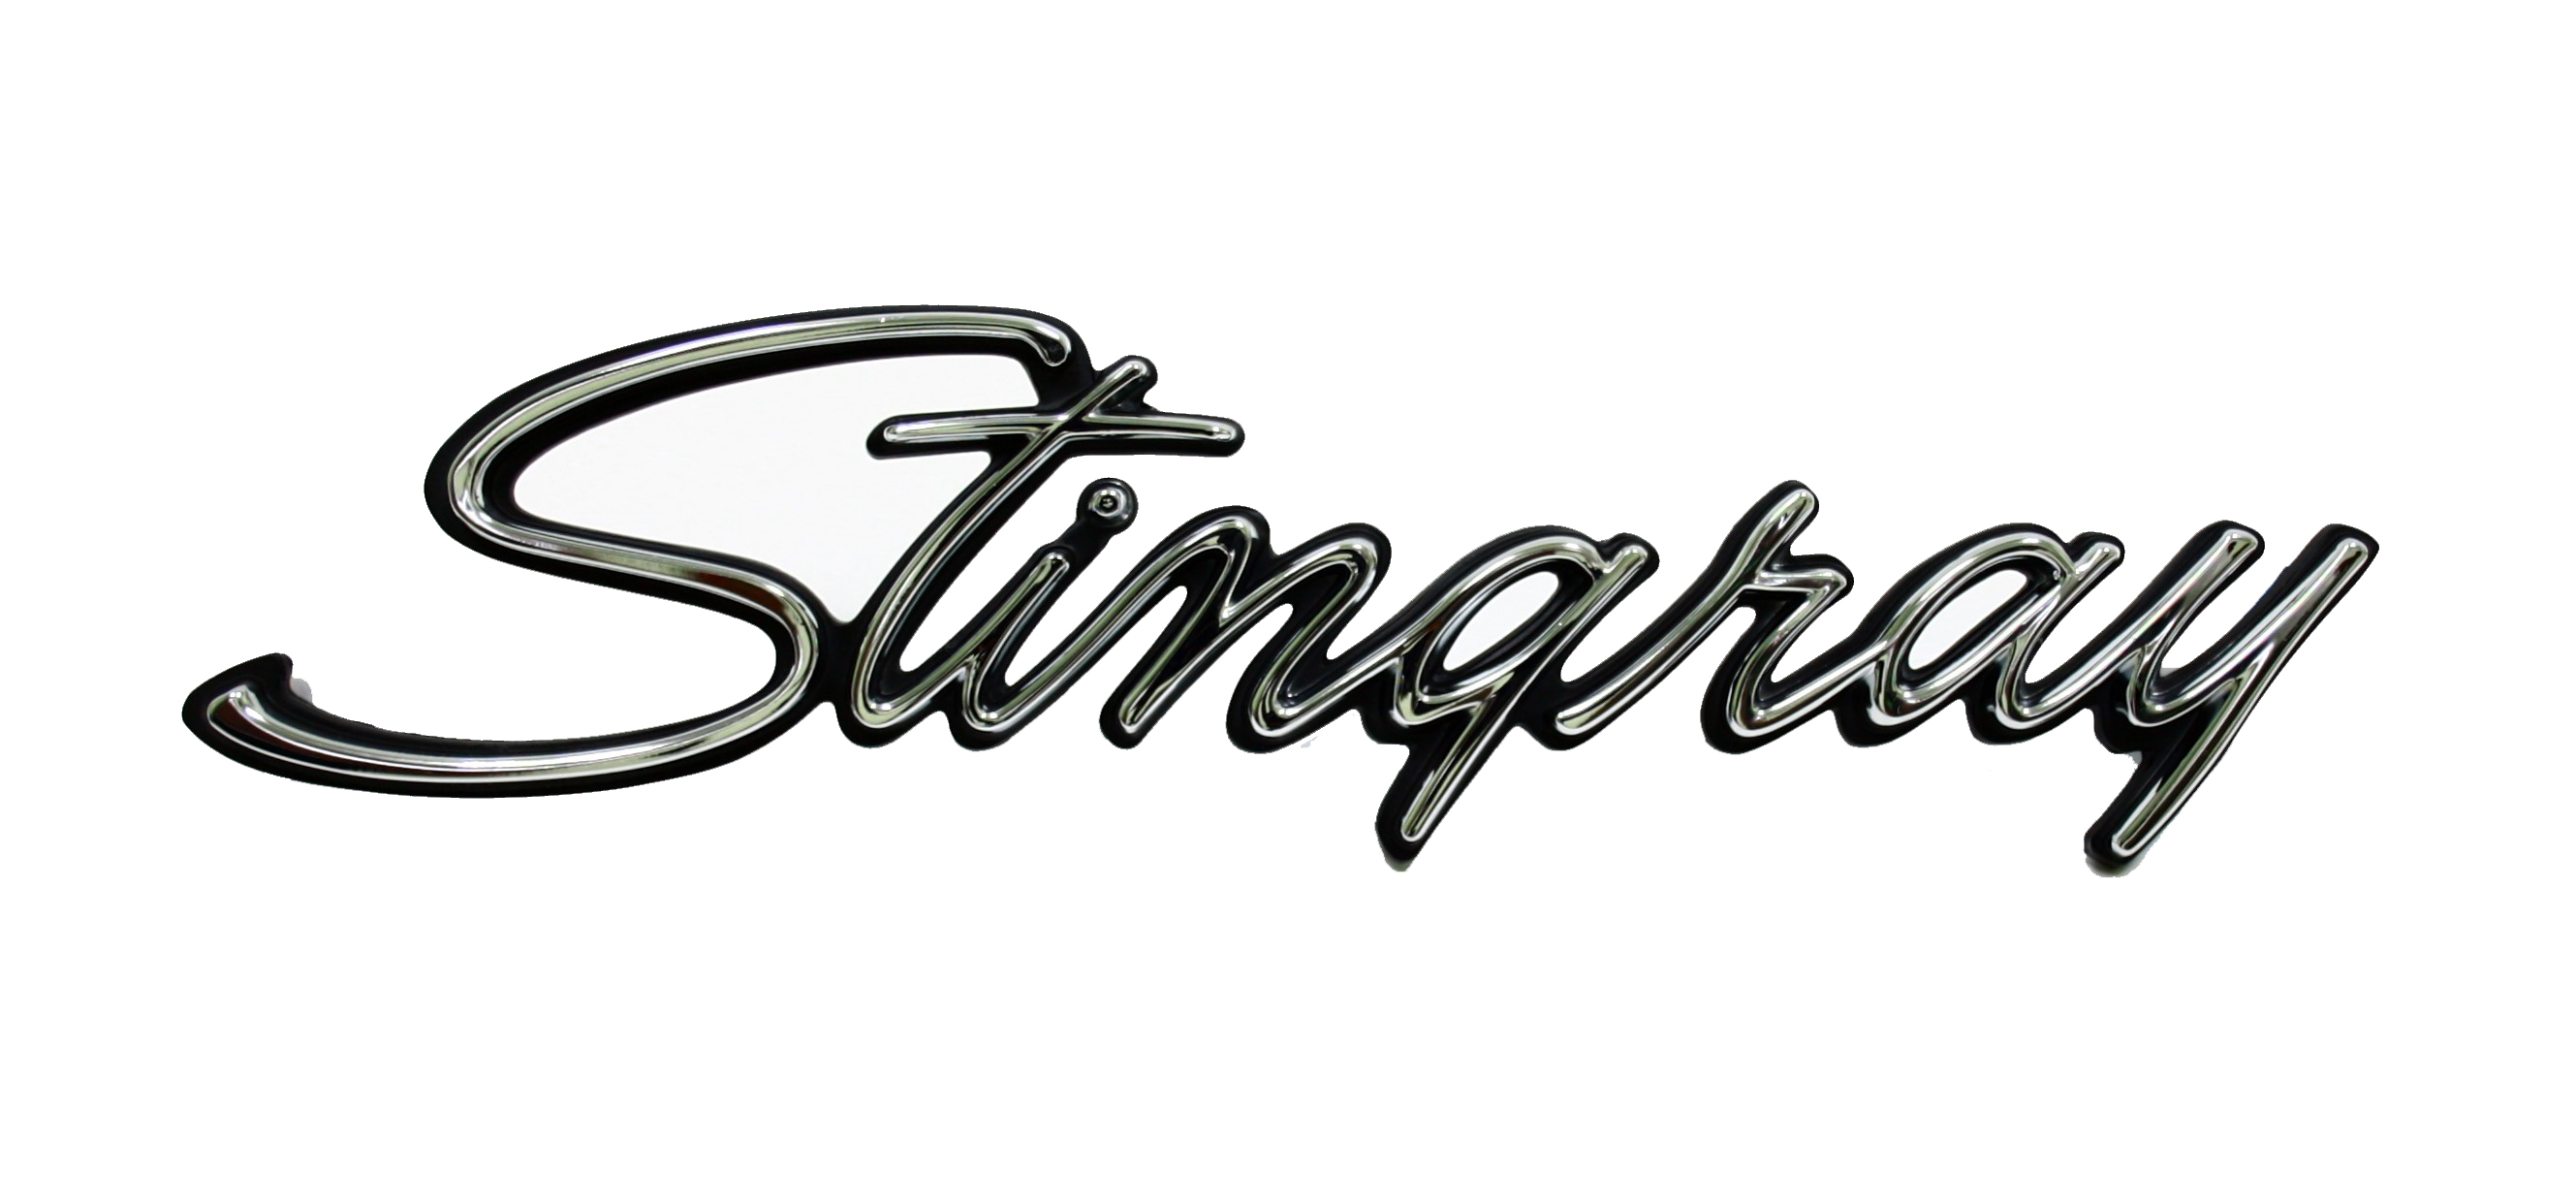 1969-1973 Corvette Side Emblem (Stingray)